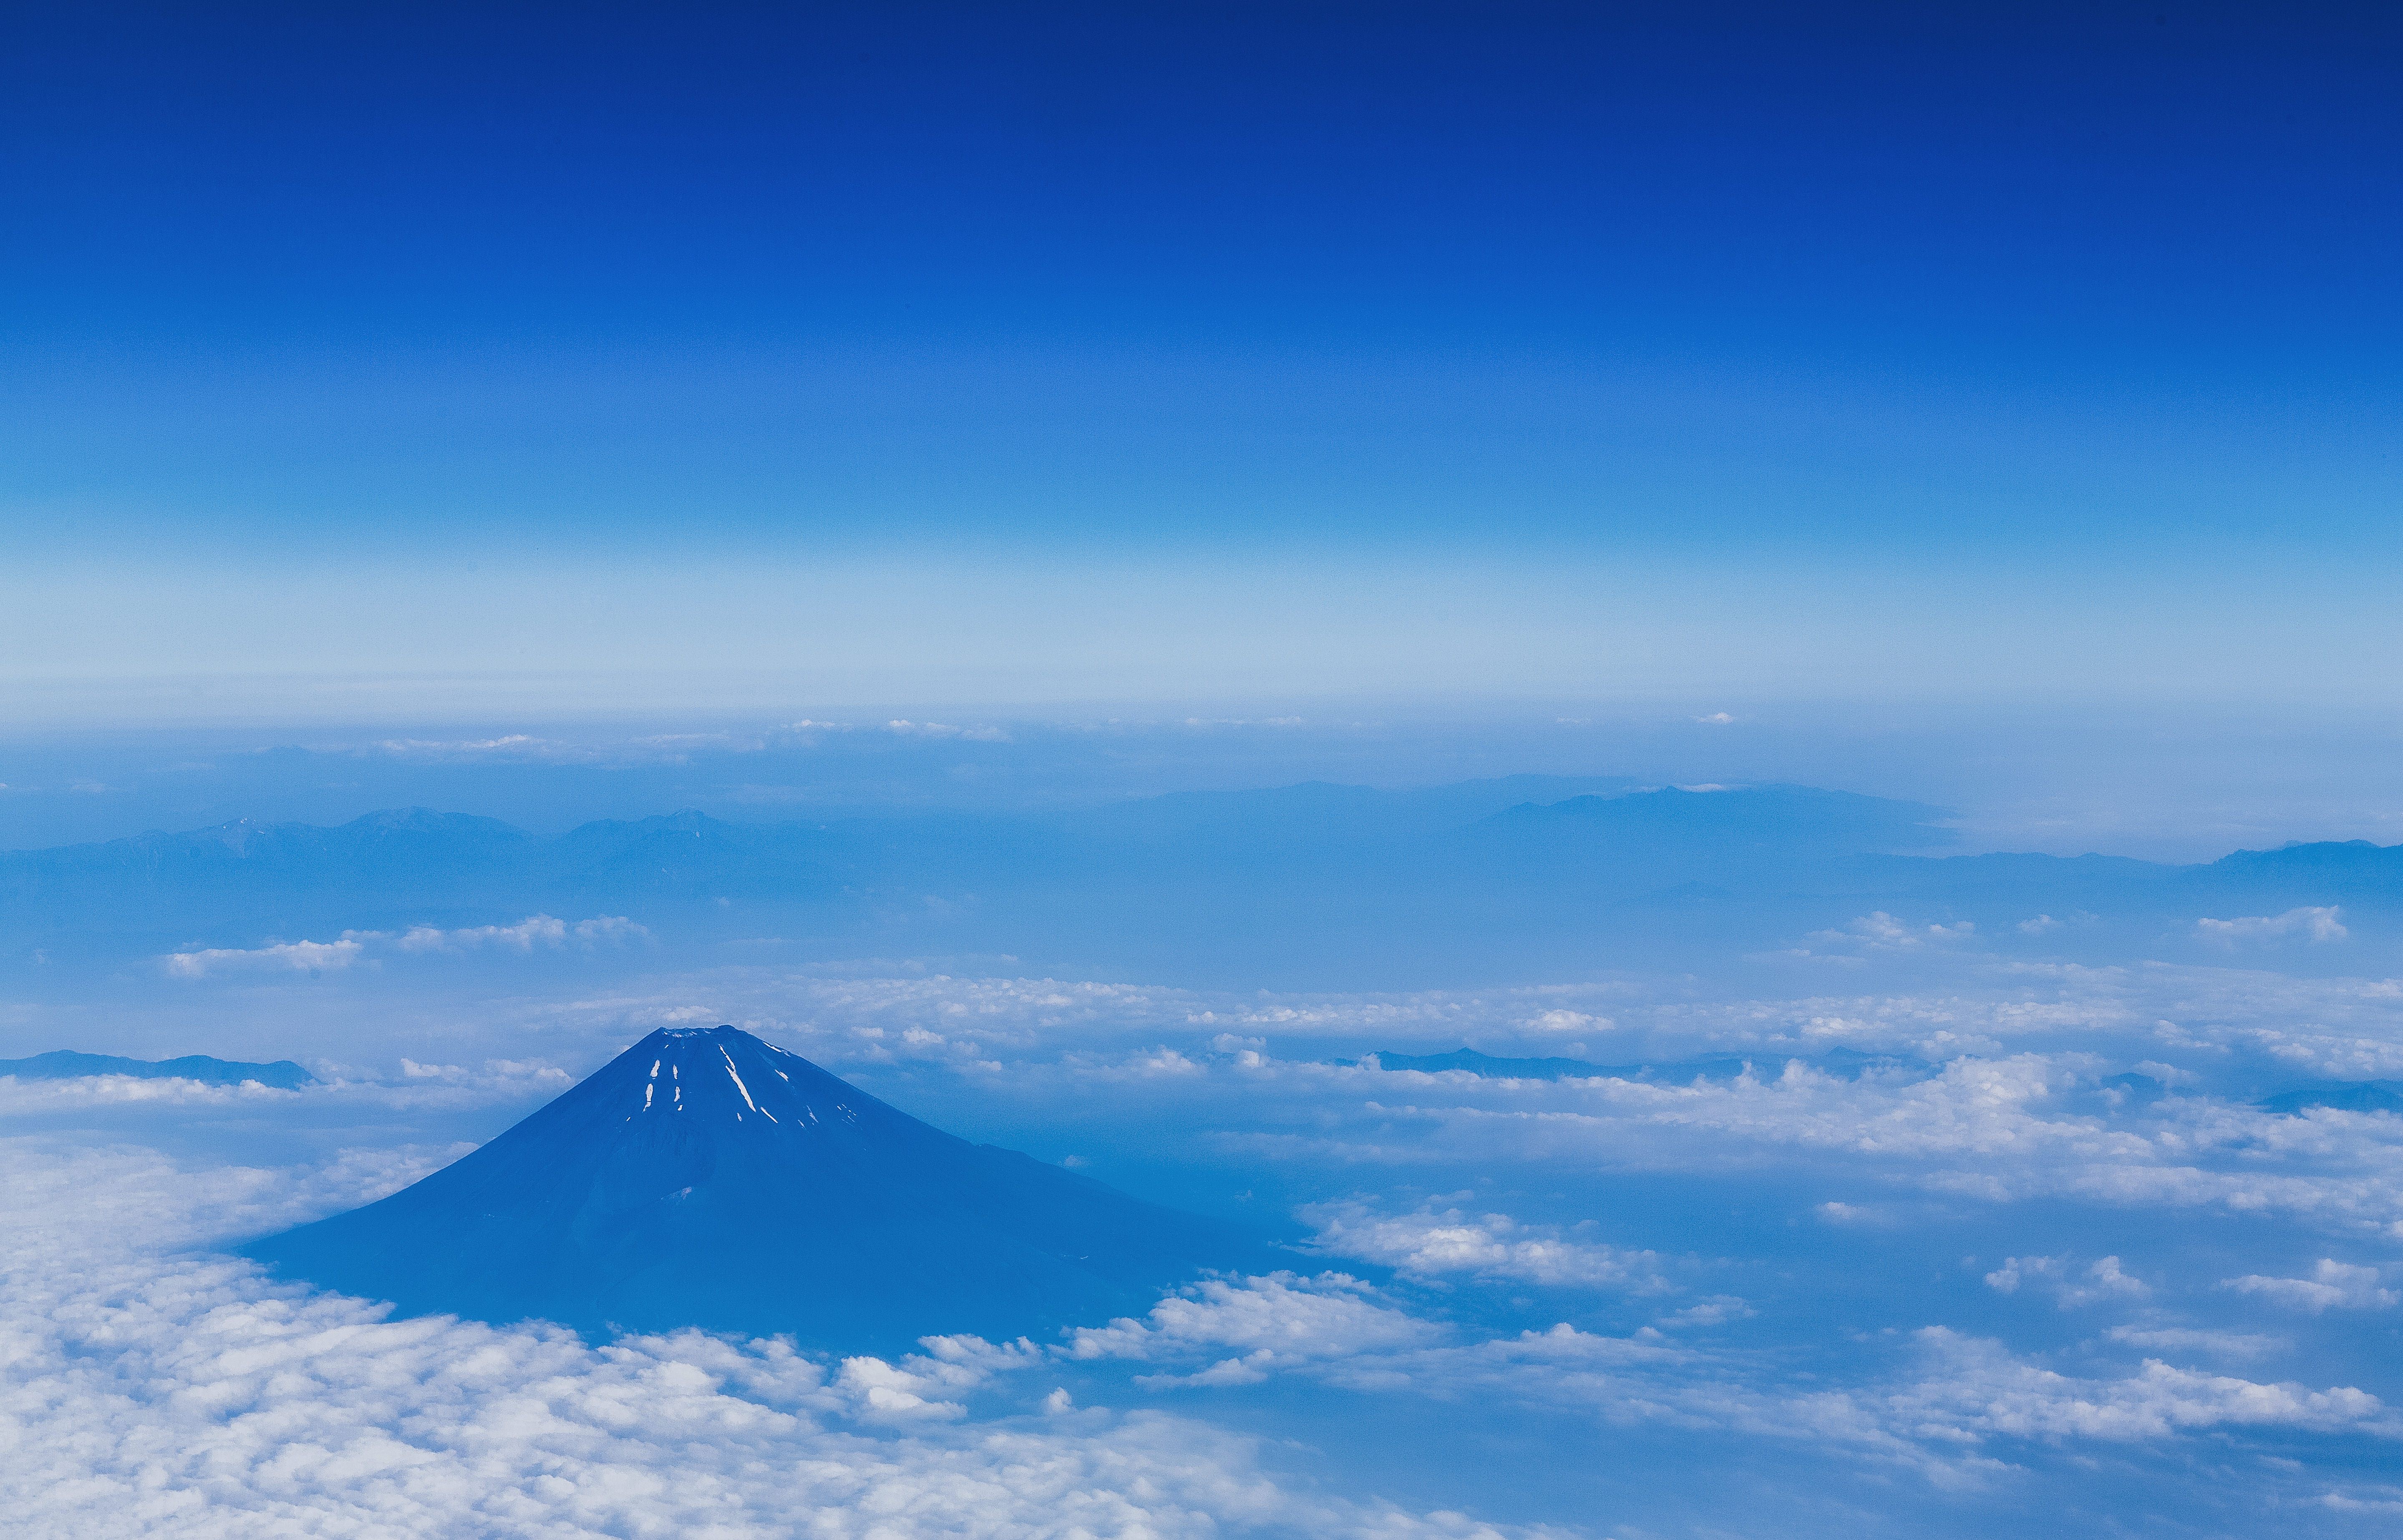 上空から雪解けの富士山 夏 の写真を無料ダウンロード フリー素材 ぱくたそ